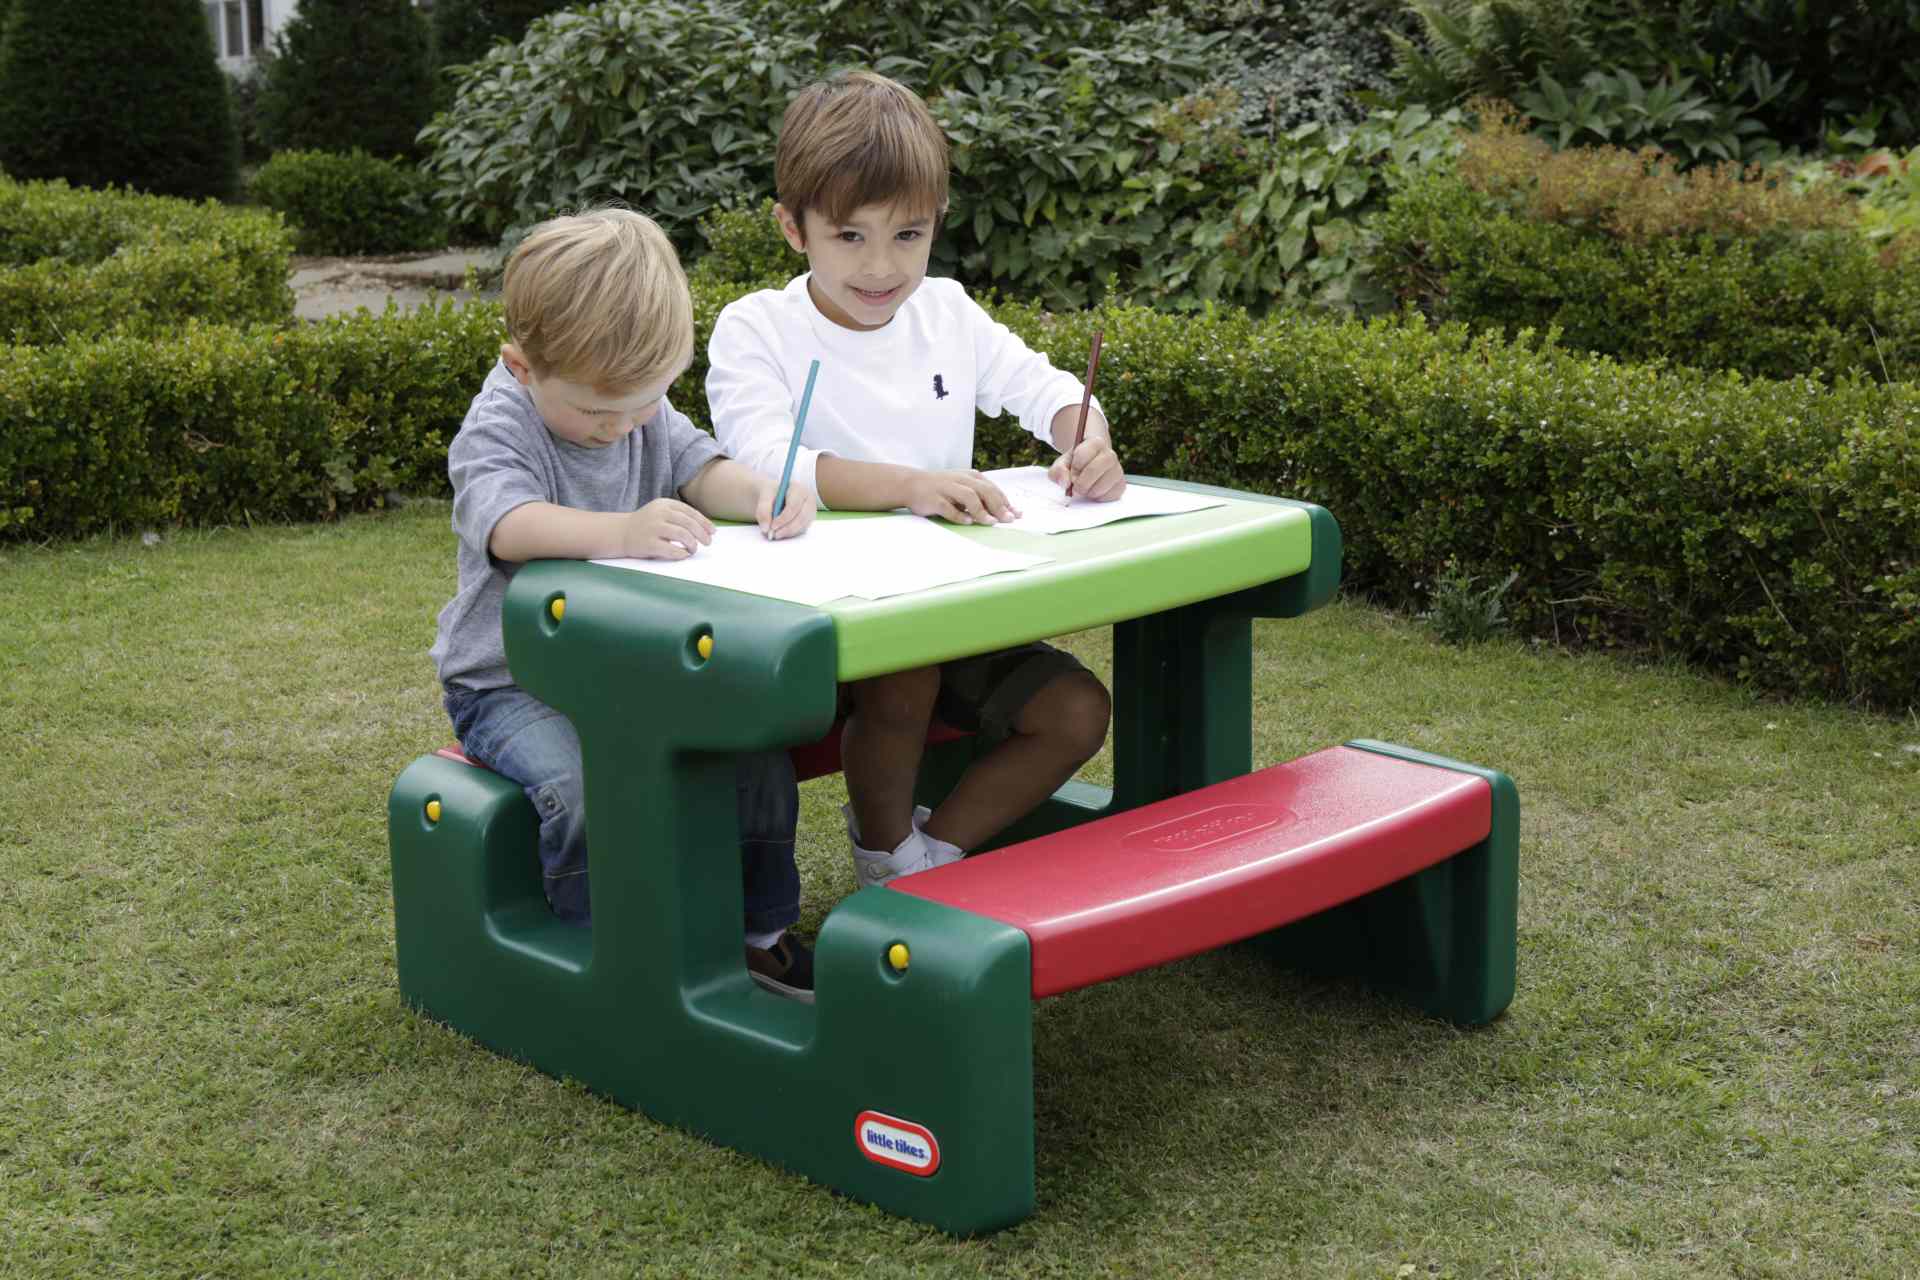 Little tikes tavolino da picnic junior per bambini - fino a 4 posti - per giocare, fare i compiti & costruire - LITTLE TIKES